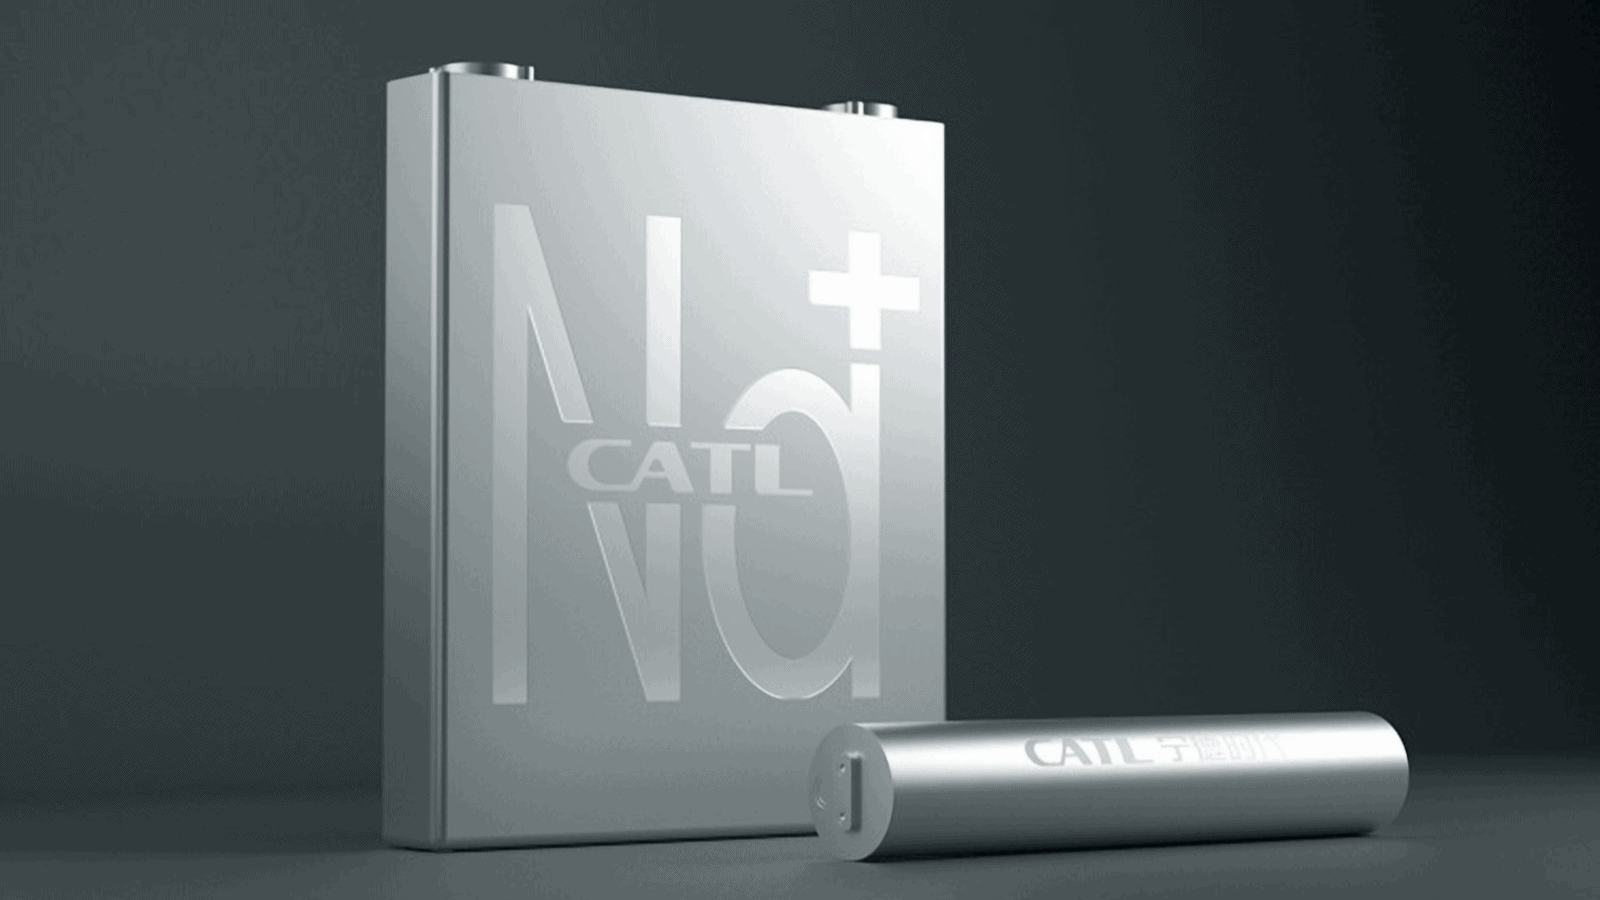 Image showcasing China's CATL sodium-ion battery